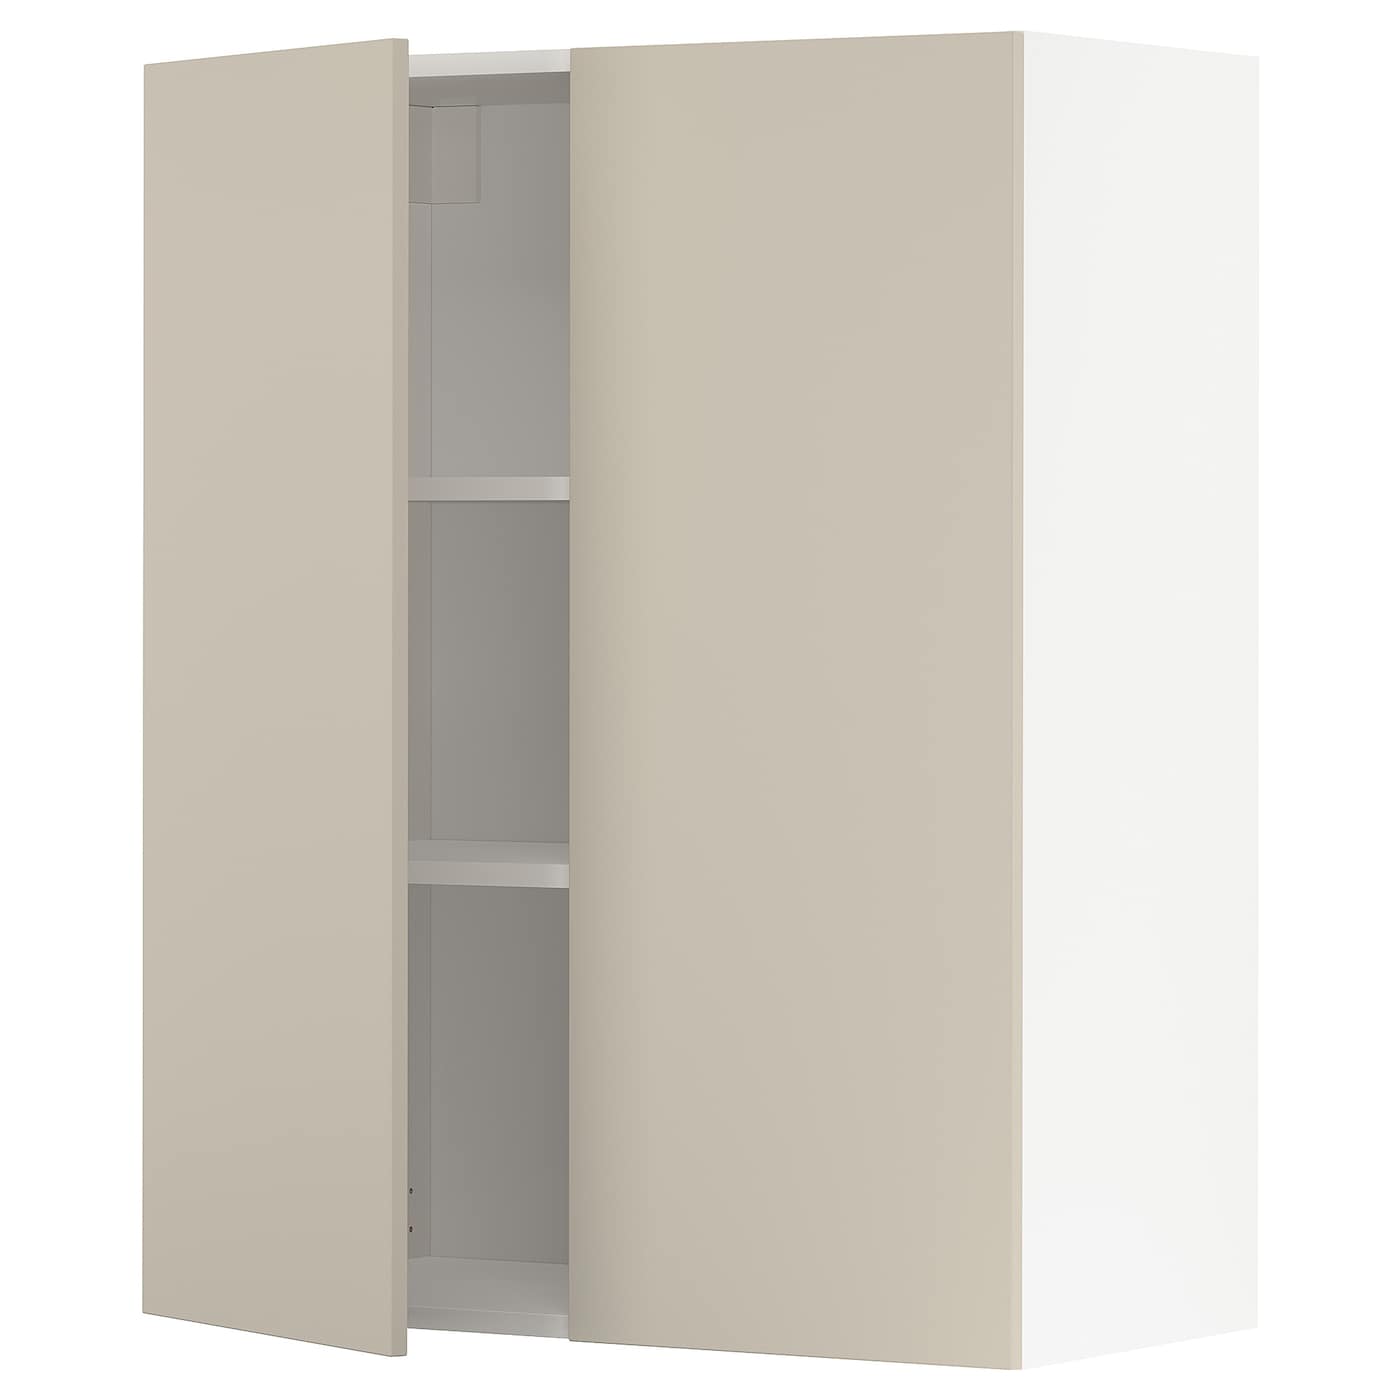 Навесной шкаф с полкой - METOD IKEA/ МЕТОД ИКЕА, 100х80 см,  белый/бежевый